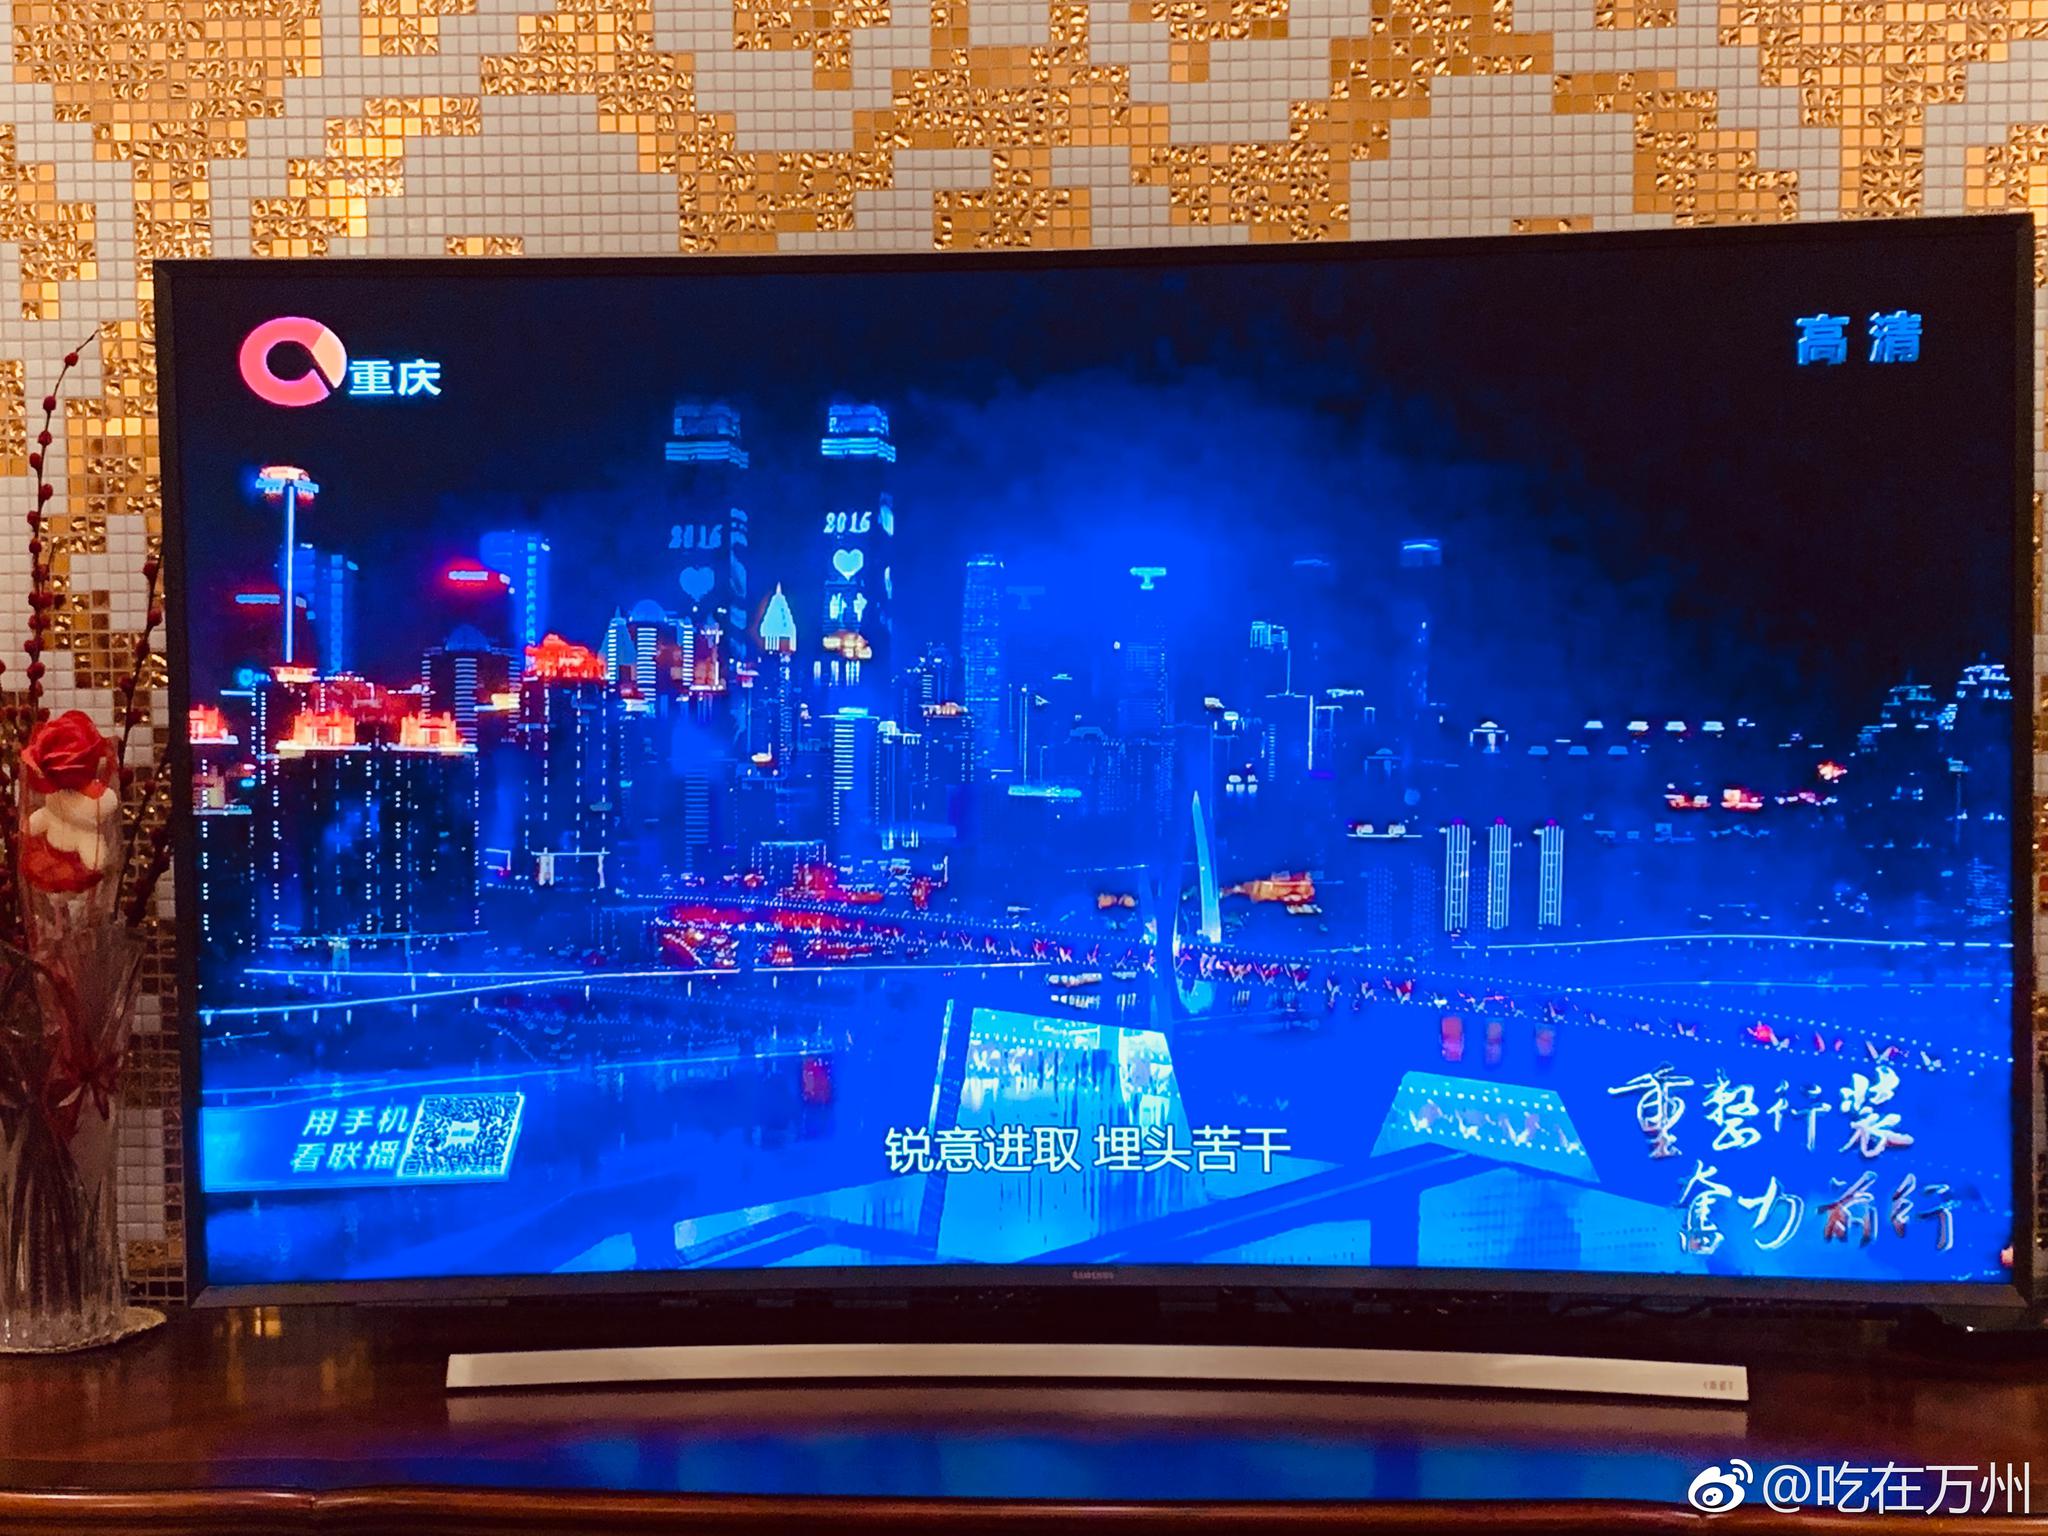 重庆新闻联播:继续发扬山城人民的真抓实劲,敢抓狠劲